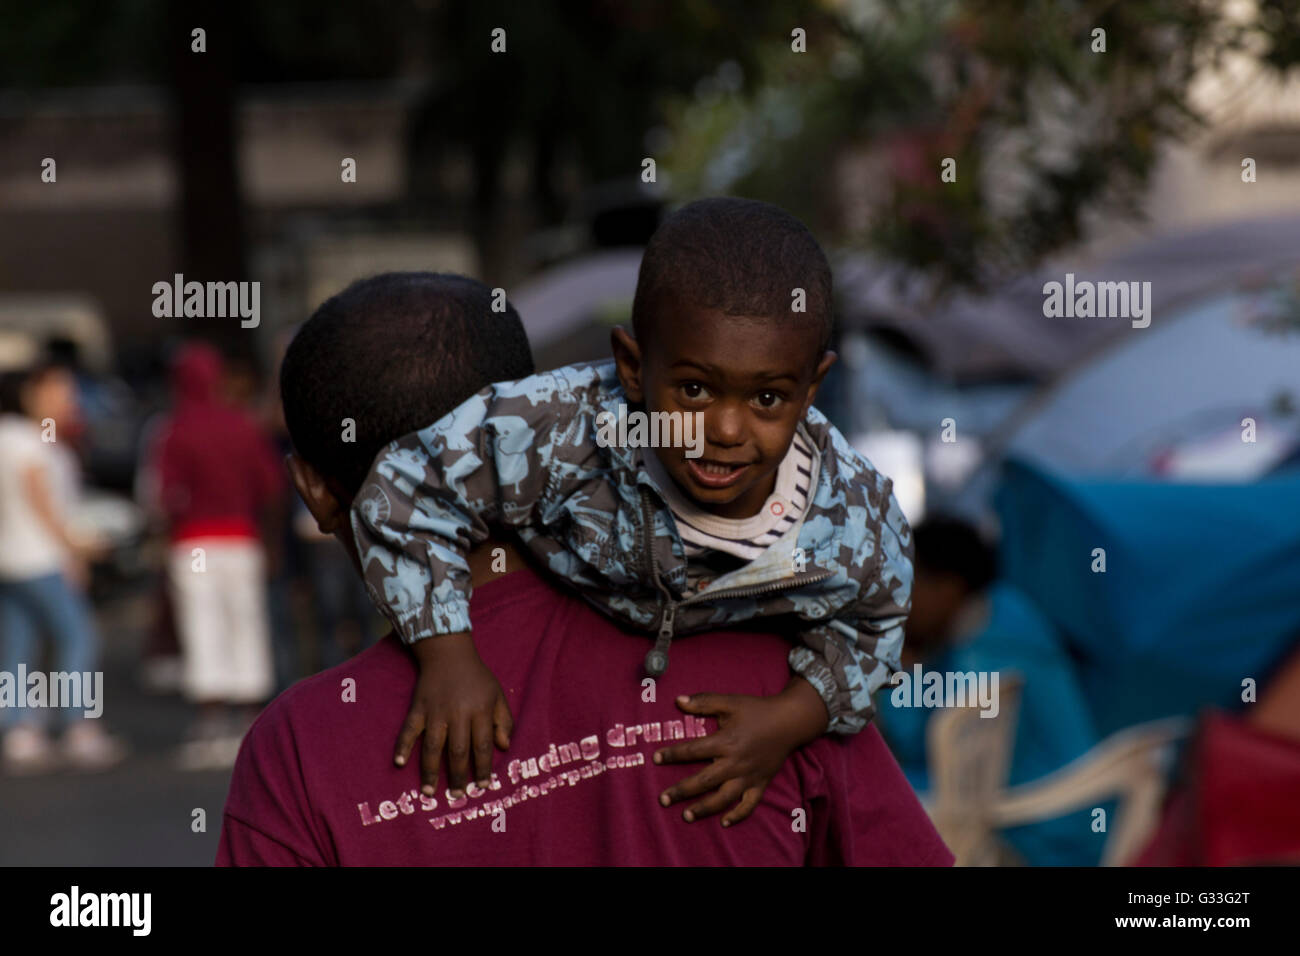 Des centaines de migrants, dont beaucoup viennent de l'Ethiopie, la Somalie et l'Érythrée, est arrivé dans les dernières semaines sur les bateaux en Italie en provenance de Libye Banque D'Images